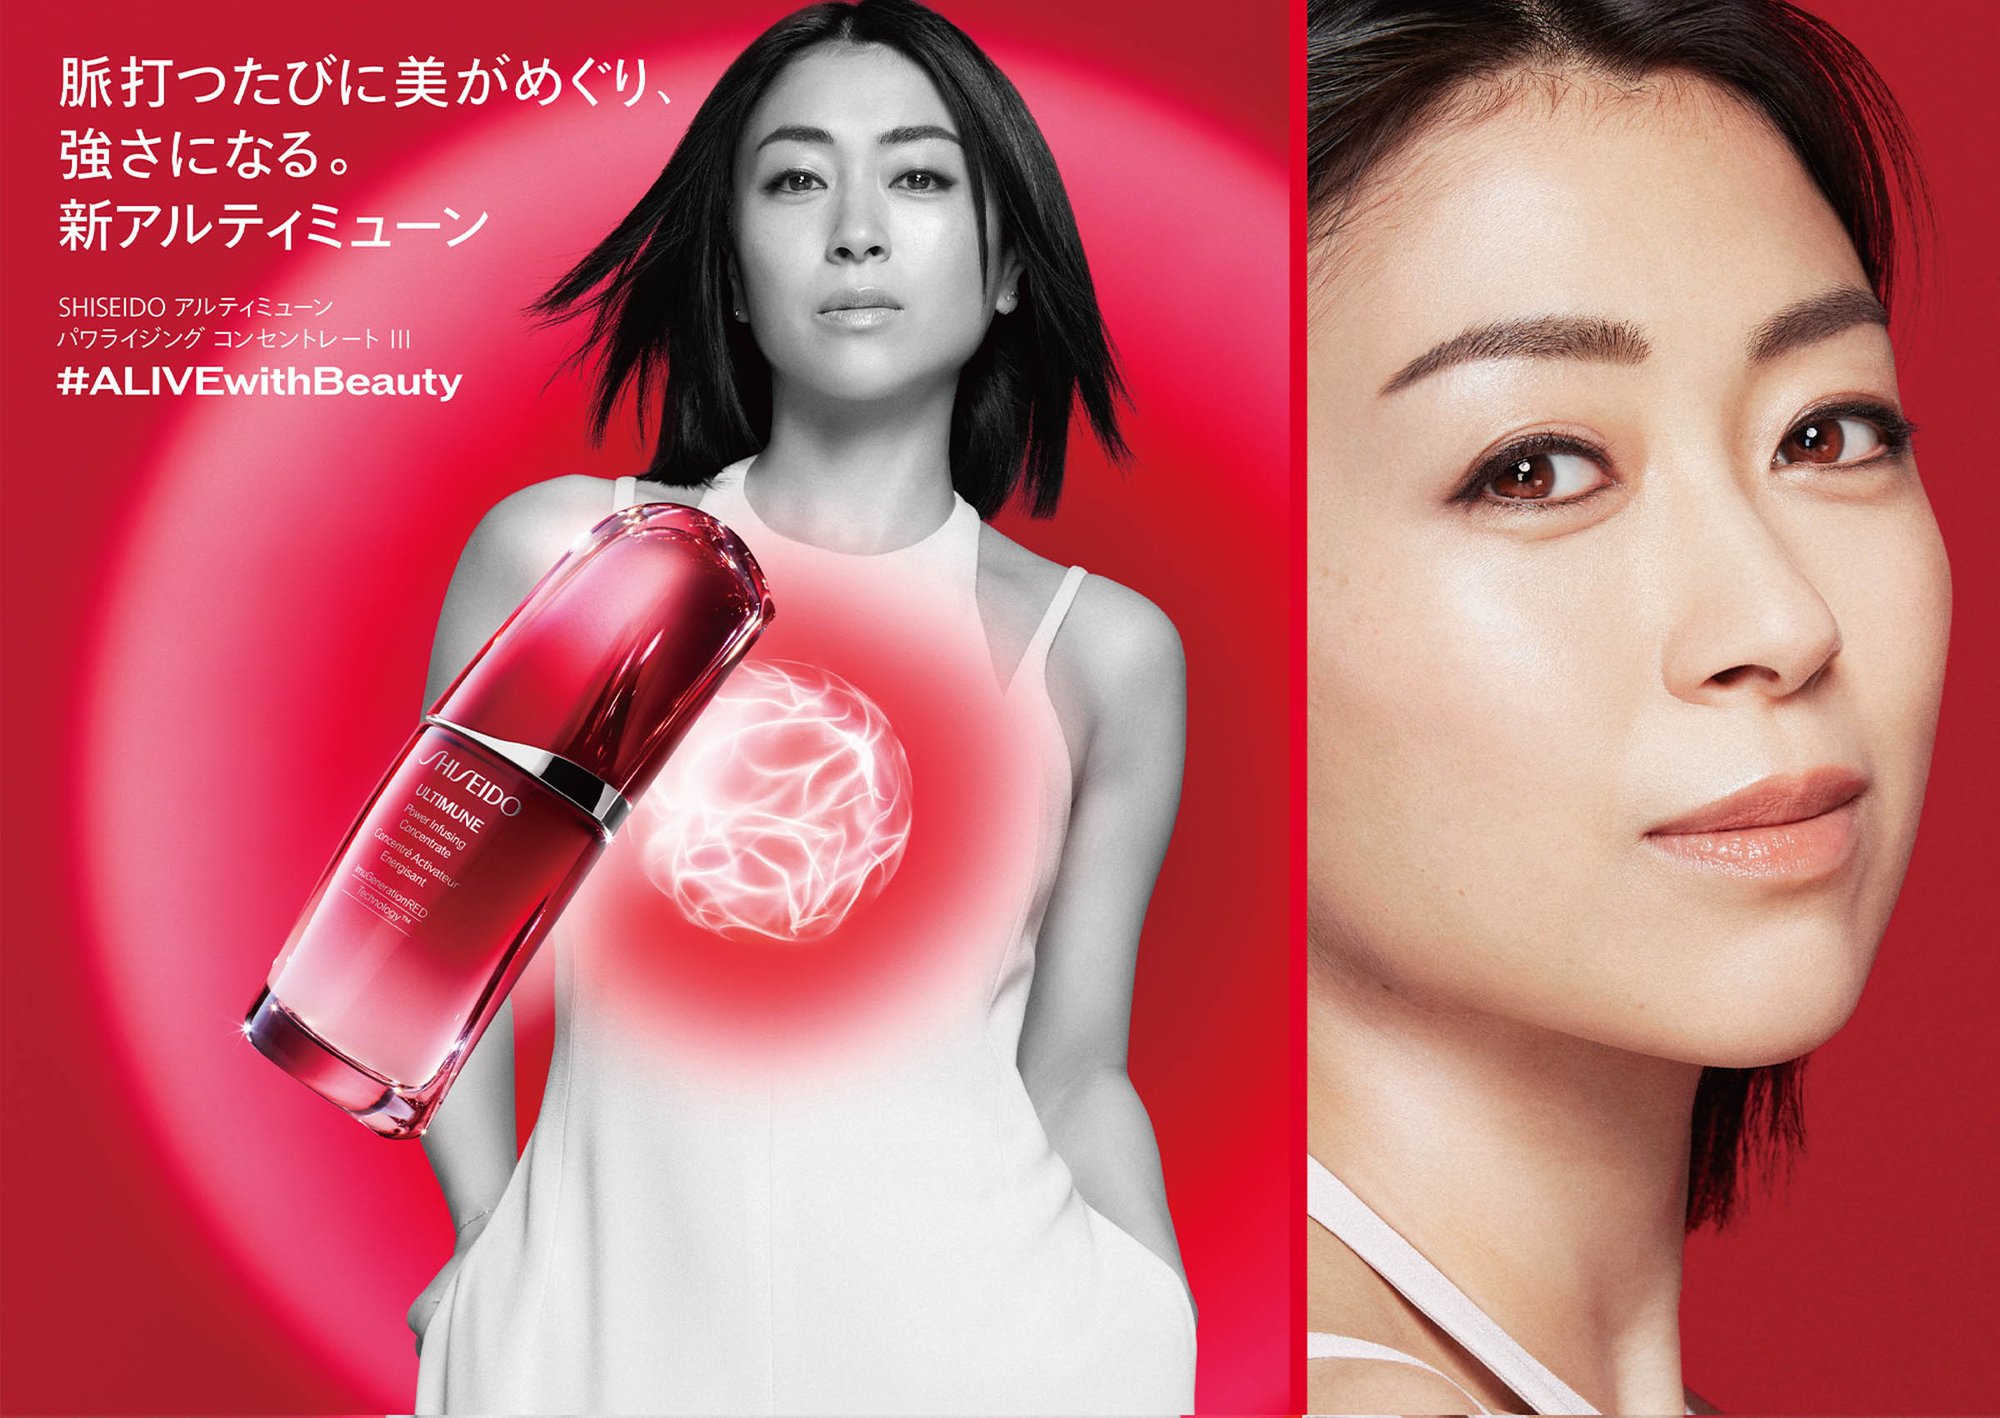 宇多田ヒカルが Shiseido のアンバサダーに キャンペーンのための新曲を公開